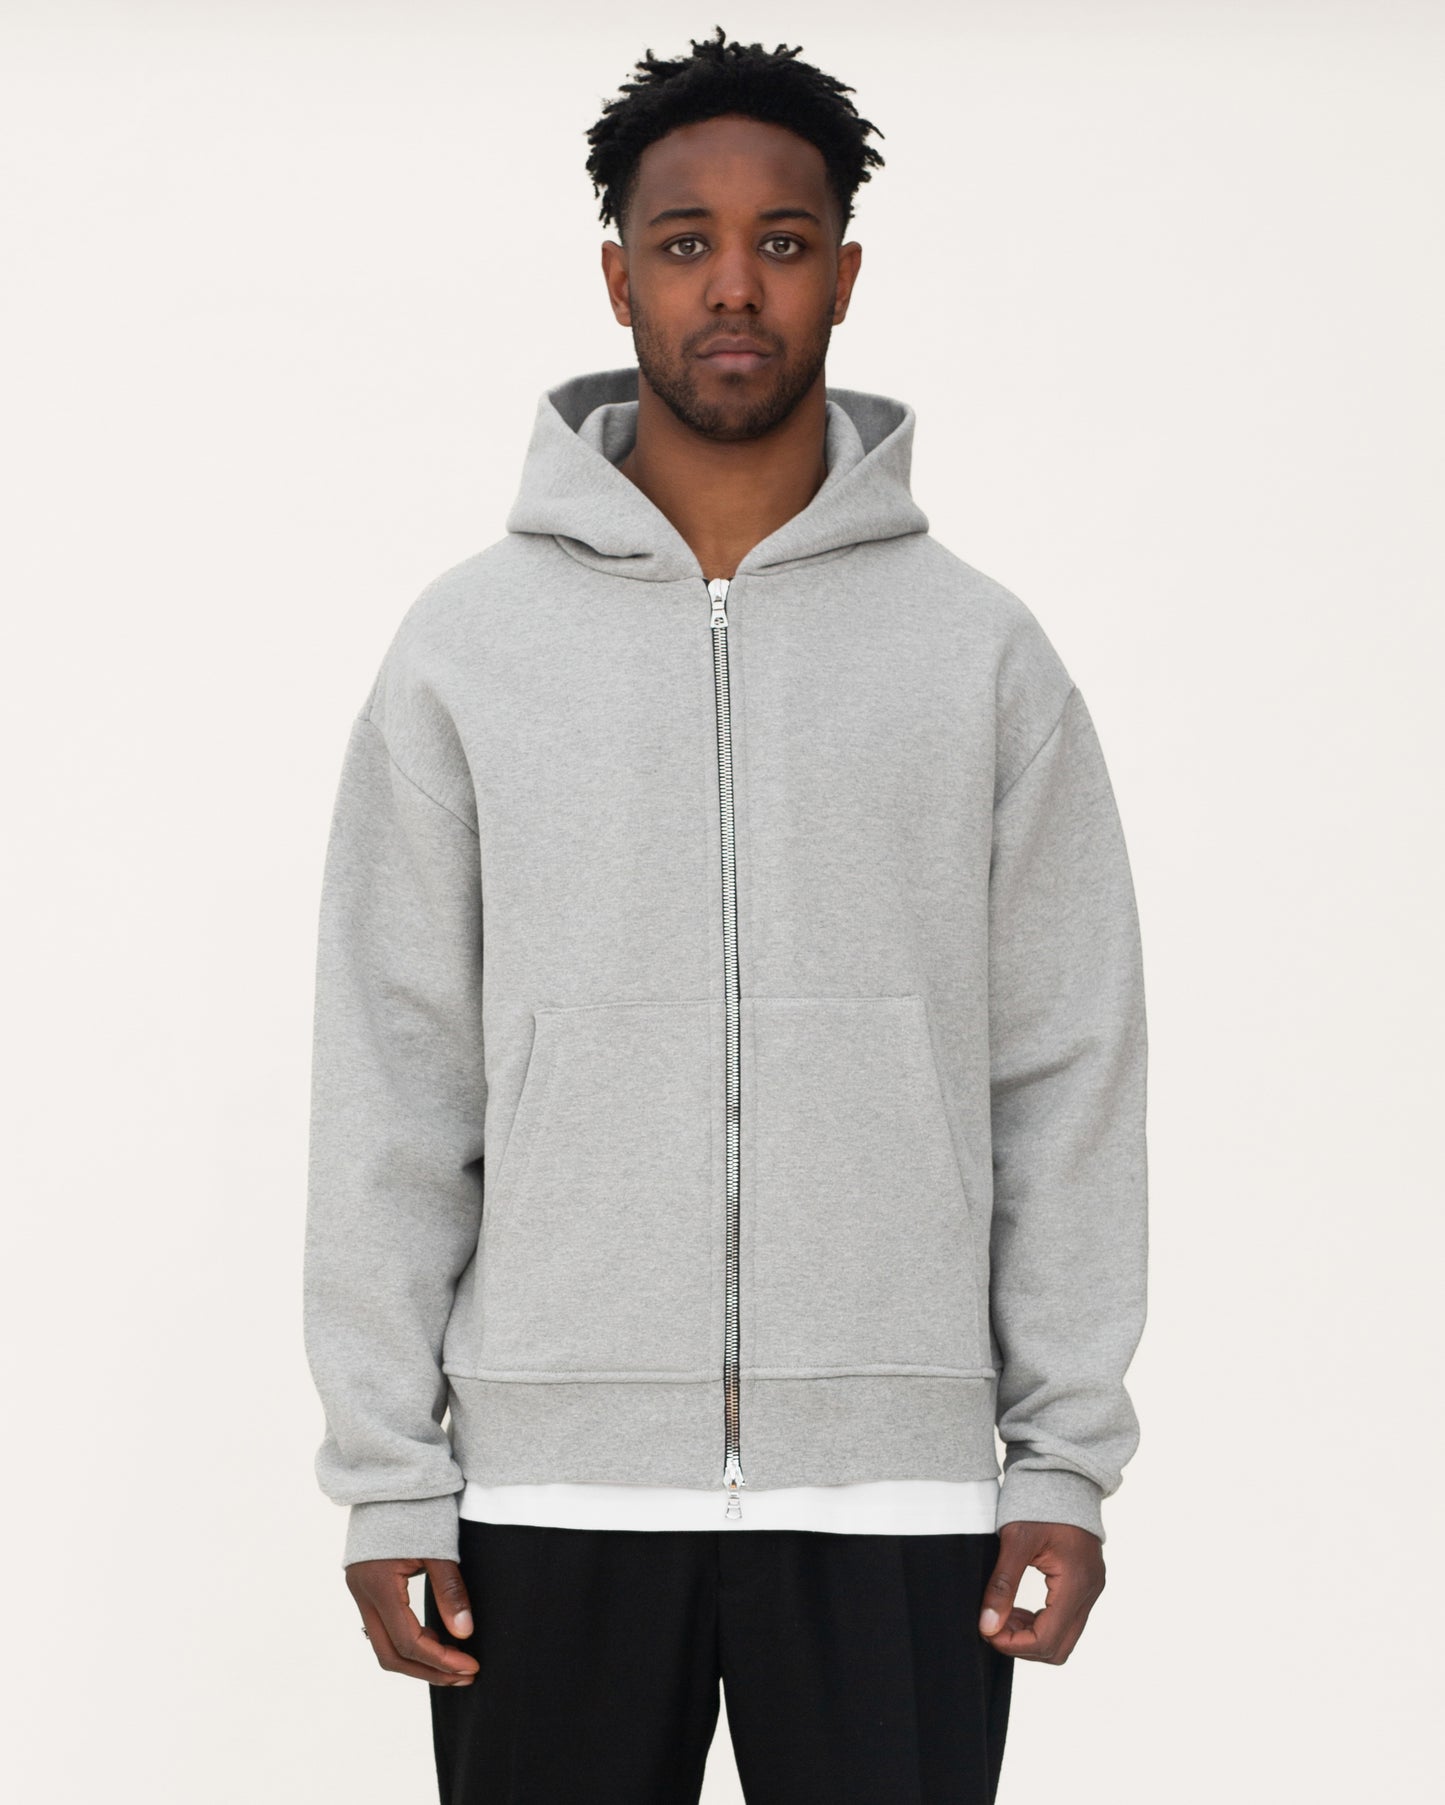 zip up hoodies, grey hoodie, mens hoodie, front side